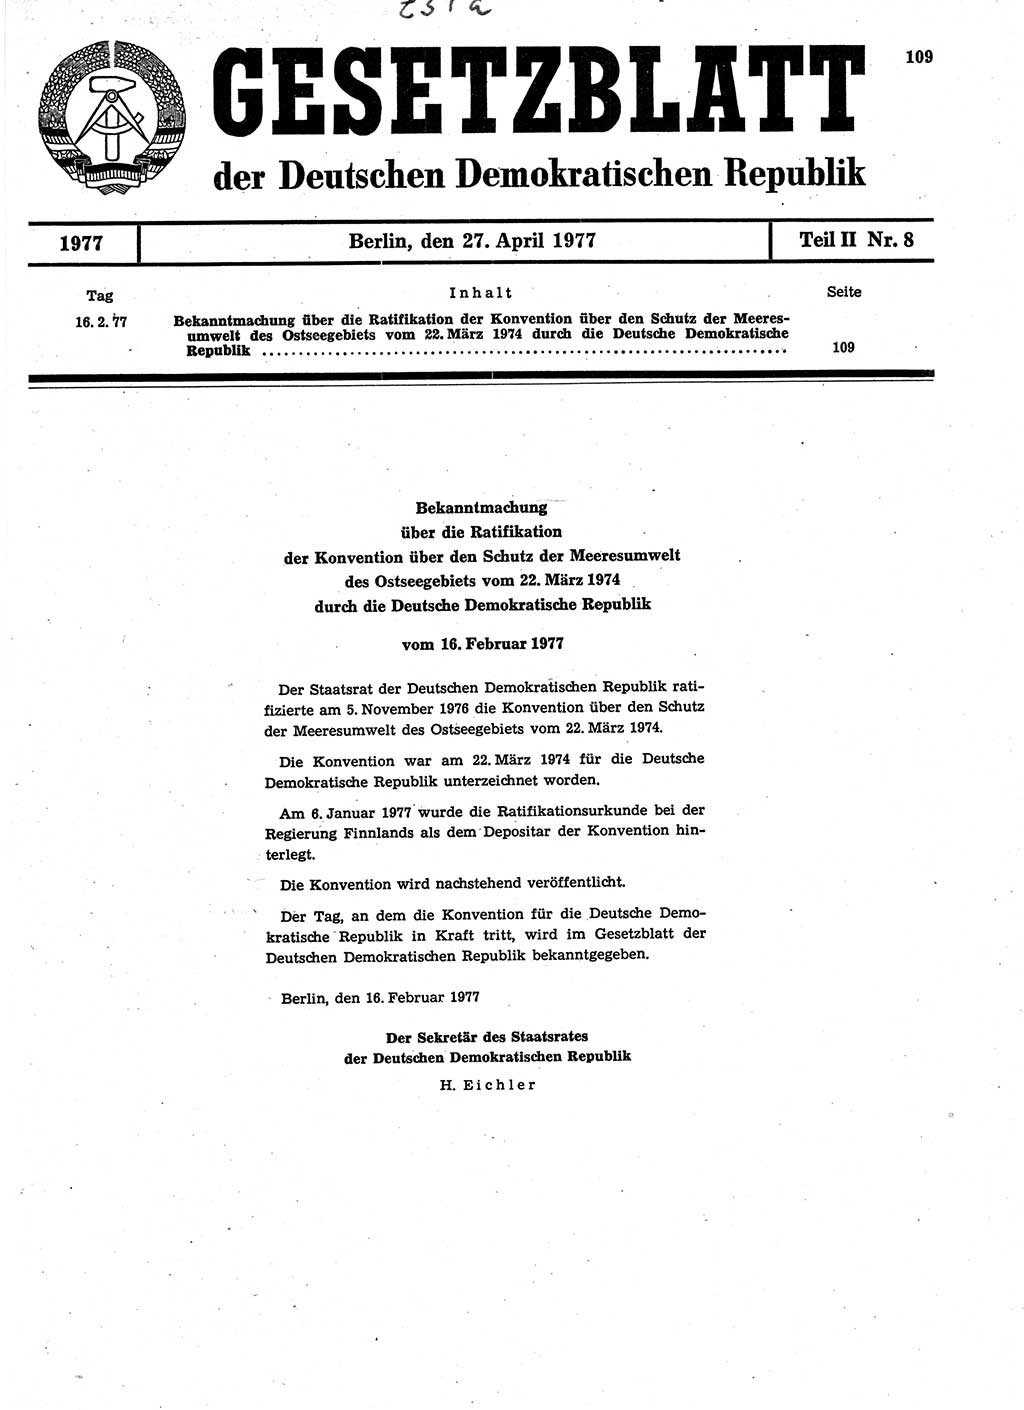 Gesetzblatt (GBl.) der Deutschen Demokratischen Republik (DDR) Teil ⅠⅠ 1977, Seite 109 (GBl. DDR ⅠⅠ 1977, S. 109)